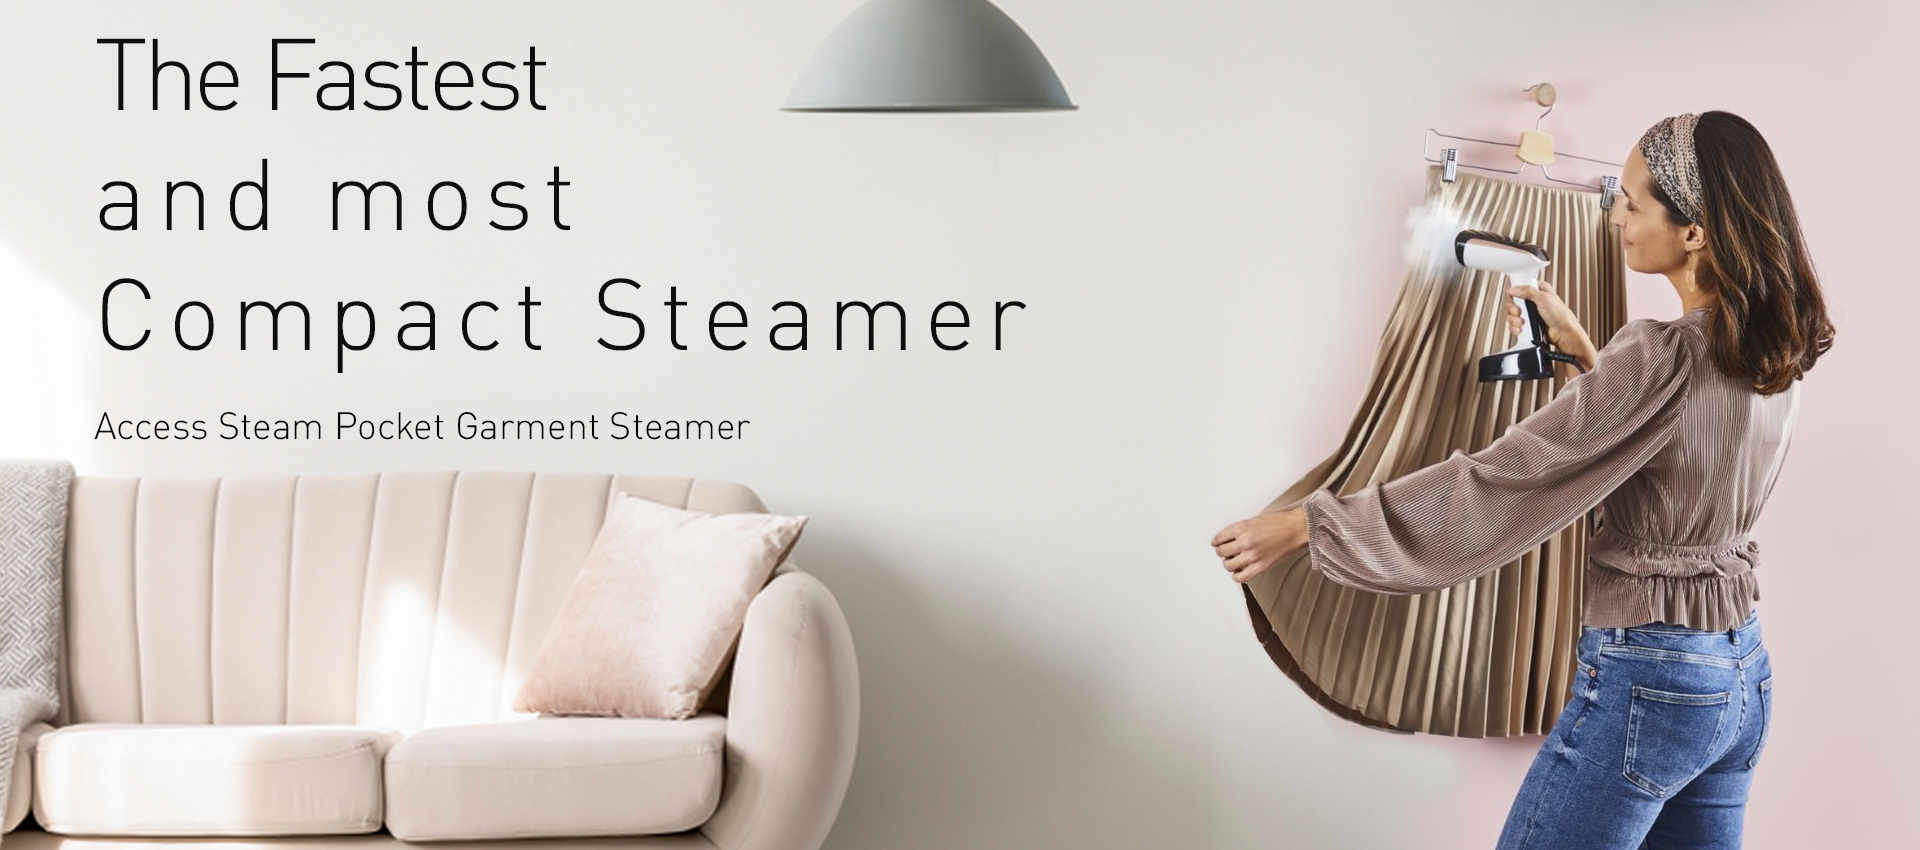 Garment Steamer